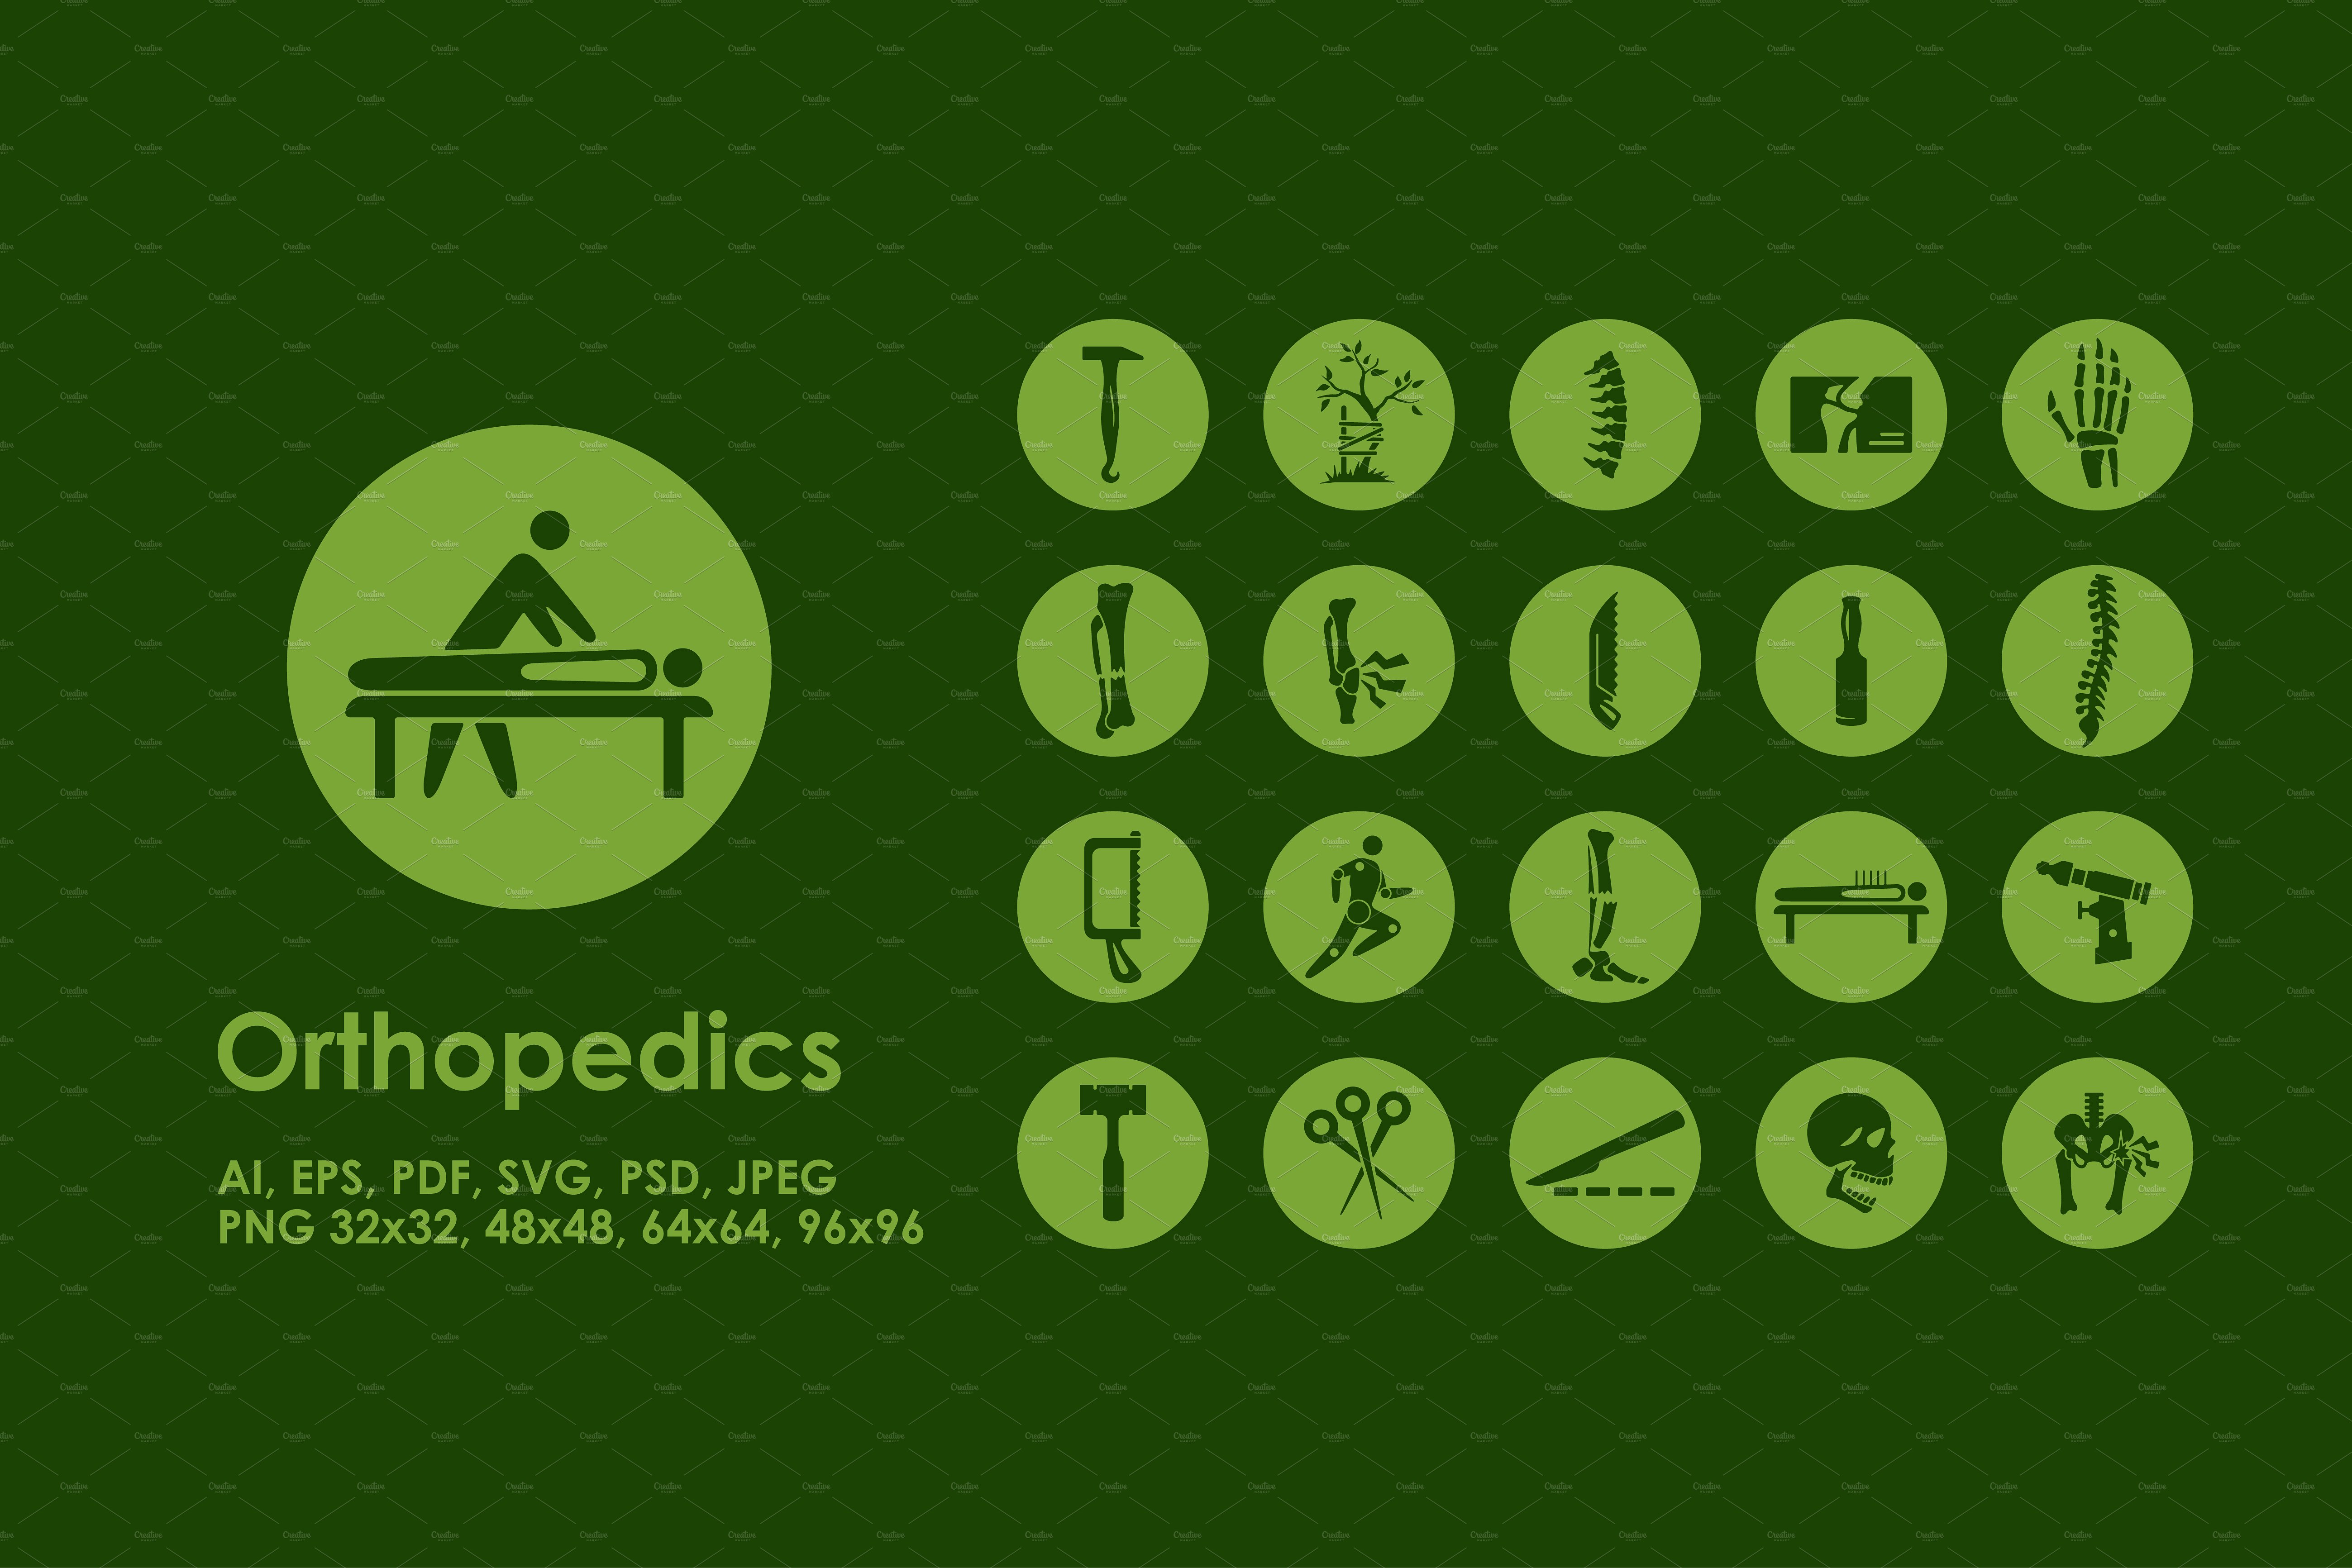 醫院骨科醫療相關的圖標 Orthopedics icons